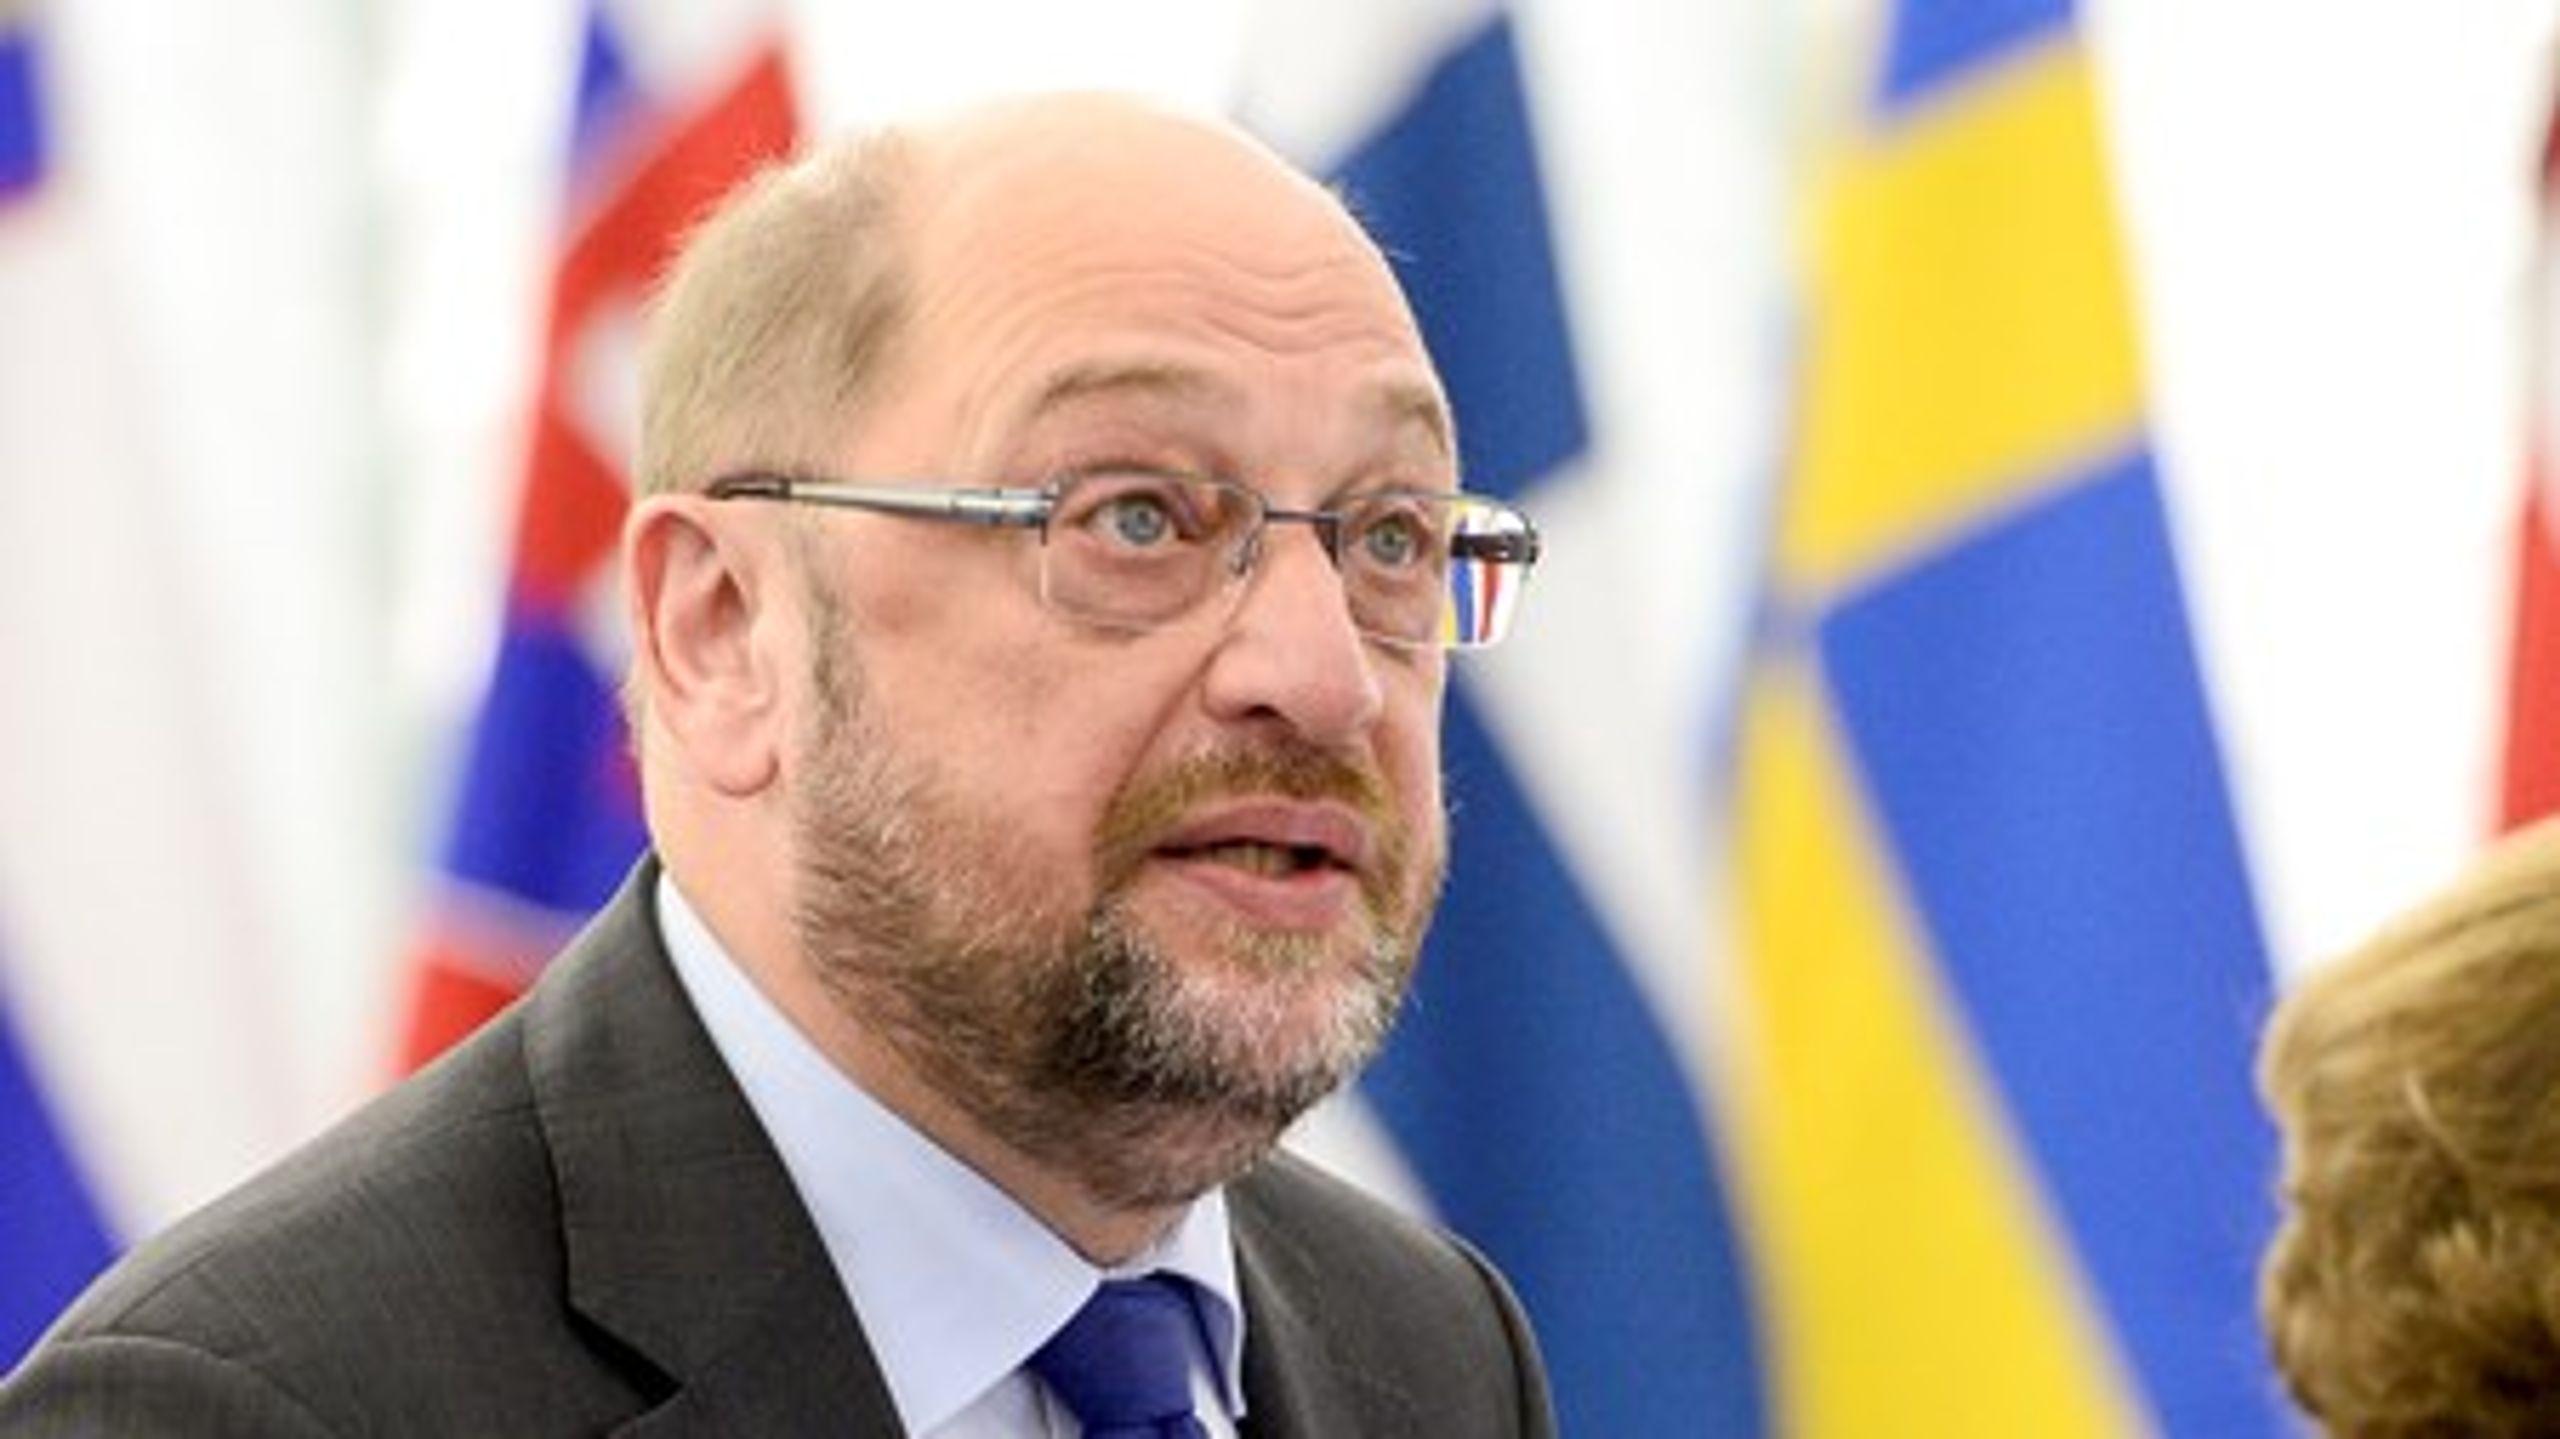 Formand for Europa-Parlamentet Martin Schulz talte mandag i telefon med statsminister Lars Løkke Rasmussen (V) om, at den danske regering skal sende en repræsentant til Parlamentet for at forklare det kontroversielle smykkeforslag.